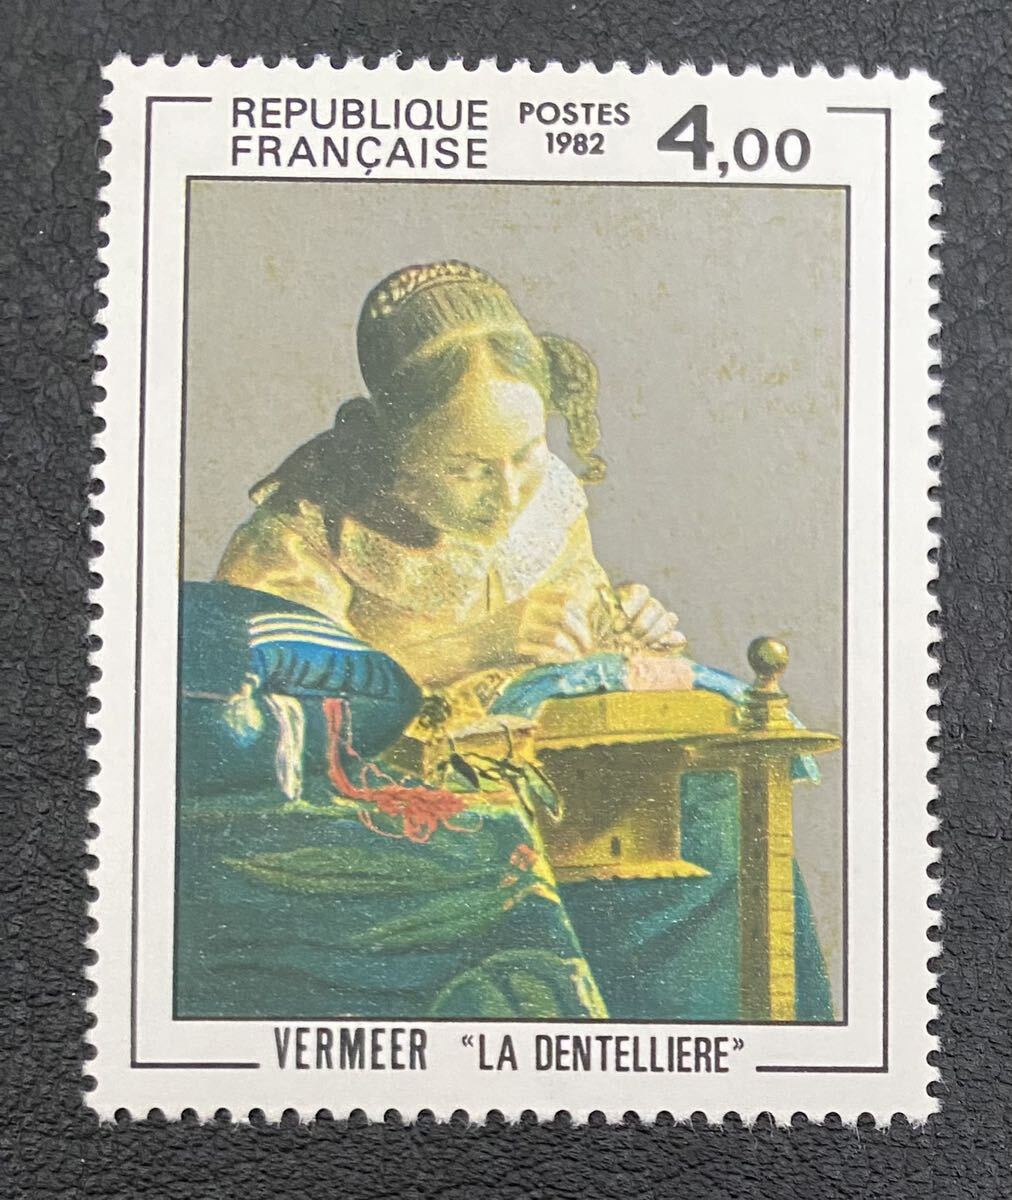 Frankreich Vermeer Lacemaker Gemälde Fine Art 1 Stück komplett unbenutzt NH, Antiquität, Sammlung, Briefmarke, Postkarte, Europa